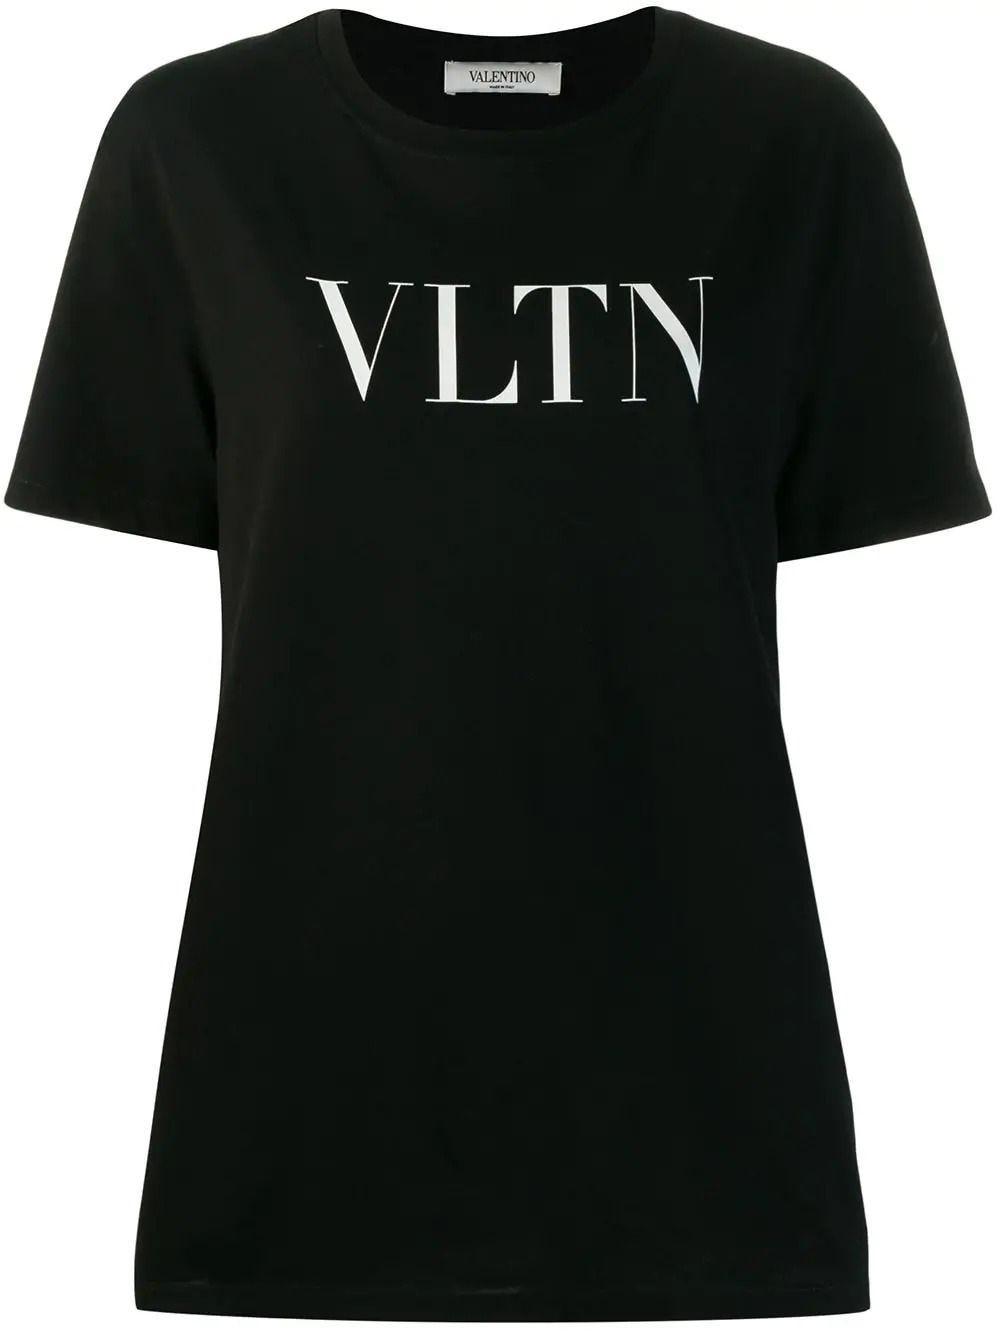 Valentino Cotton Vltn T-shirt in Black - Save 69% - Lyst